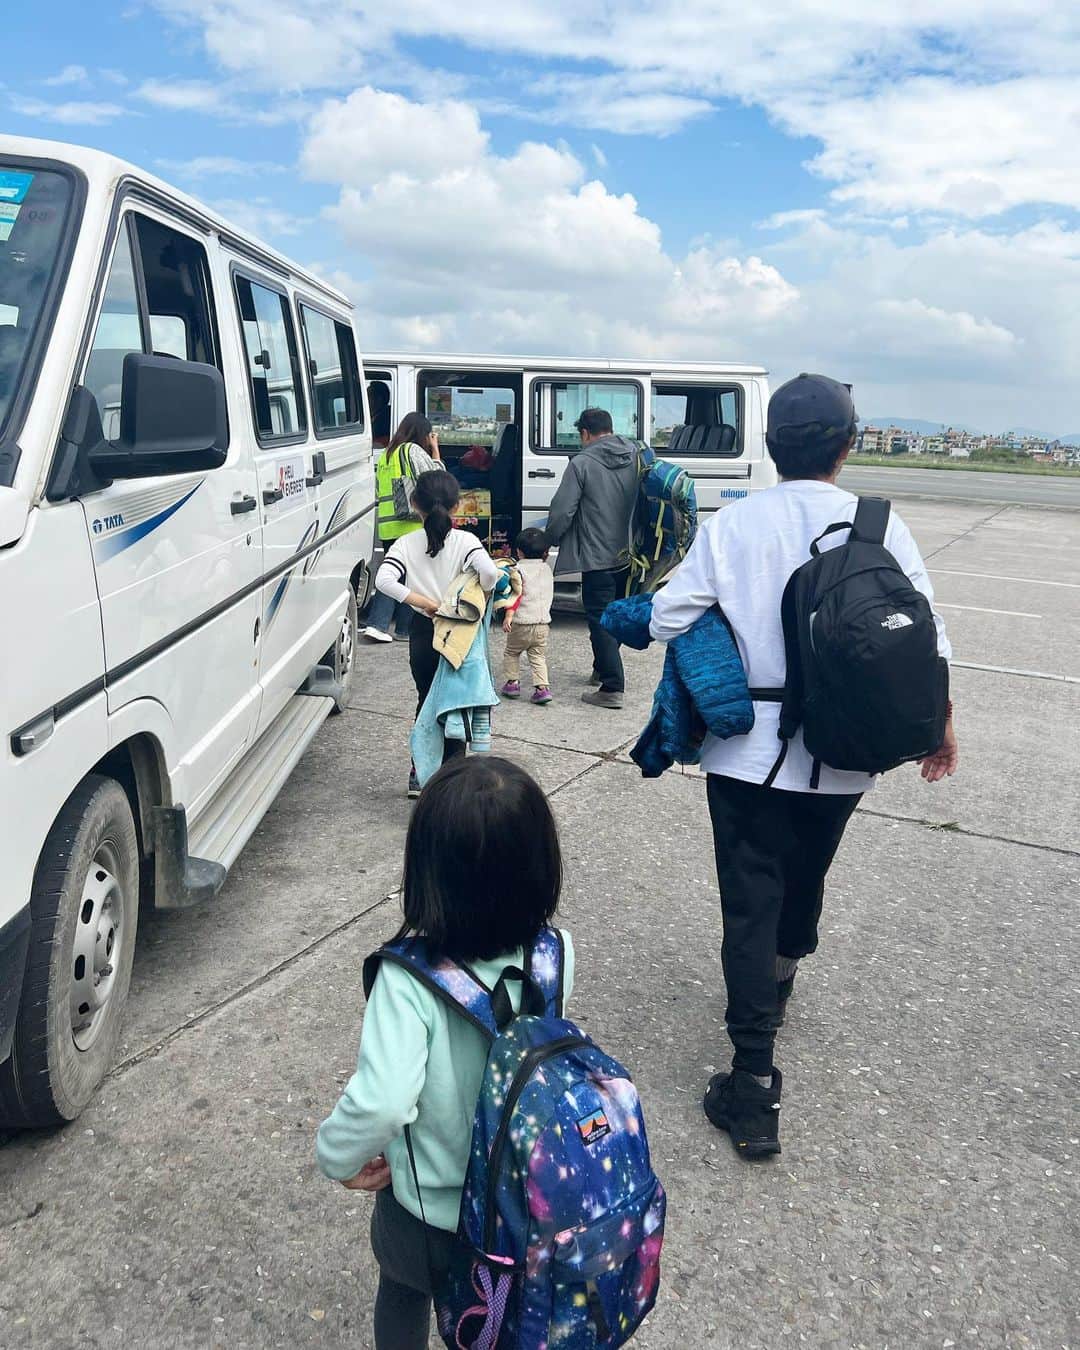 松尾翠さんのインスタグラム写真 - (松尾翠Instagram)「家族で子連れネパール旅が始まっています🇳🇵 一生にもう一度来られるかはわからないし、このチビたちの今の感性と来られるのも今だけ。 と、やったれー精神で奮起して、1年間みんなで計画を立てて臨んでる。  でも、色々あるのは旅の醍醐味と言わんばかりに 昨日は早速7時間空港で待機したけど 結局飛べず、カトマンドゥのホテルにもどった。 でも、だれも こんなはずじゃなかったのにーー！！と思わないでいられた事を感じられて嬉しかった。 今は、4時過ぎに起きて、空港にて天候待ち2日目🚁 ルクラの天気がなんとも微妙みたい。 ナムチェは快晴みたいなんだけどー😂 みんなー、待っててー！  今日もこの言葉と共に。  「思い通りにならないことと、幸せでいることは同時に成り立つと改めて教わったよう。」  『くもをさがす』  西加奈子(著)  病気になったらかわいそう あれが出来る事は価値が高い 痩せてる方がいいし胸は大きい方がいい これはこうであれはああで・・・。 そんなつもりはなくても、ここで生きてるだけで、カテゴリー分けや評価、価値、みえ方、そんなものに辟易しながらも、いつの間にか自分も染まっていることに、ふとした時に思い知らされたりする。  カナダに住み、ガンになった 作家の西加奈子さん。 カナダに移住したから気づいたこと ガンになって感じ揺れ動いたその内側の瞬間瞬間の記録。 綺麗事は言わない。でもどんな時も一貫して 真ん中に透き通った何かが流れている。 一つの尊い命を生きる人の本だ。  何度もこみ上げ、泣きそうになった。 目を逸らしたくない。 この真っ直ぐな魂の言葉を 直球の感情がそのままのった言葉を 今、私に出来る一番まっすぐで、真正面から受け取りたいと思った。 西さんのその時の日記のような文章に合わせて 詩が挿入されていて、それがまた、とてもグッとくるスパイスのようになっている。 これは、折り目をつけて何度も読み返した部分の一つ。 抗がん剤治療を開始する為に、坊主にした時の描写はとても神々しかった。 ご自身でもそれを気に入っていて、美しいと感じていた。その場面で西さんが挿入した詩はこれだった。  －しっかりとした気持ちでいたい 自ら選んだ人と友達になって 穏やかじゃなくていい毎日は 屋根の色は自分で決める 美しいから　ぼくらは カネコアヤノ「燦々」―  表面的に穏やかな様子で自分を偽って傷つけるくらいなら 穏やかなんかじゃなくていい。 そんな気持ちに共感した。 うまく立ち回れていないのかもしれない。でも どこまでも、今、この瞬間の自分そのままで納得していたい。  「人に対して誠実でありたいと思うこと」 それとあわせて、 「自分の奥底に対して誠実であること」  結局のところ、見えない思いや根底に流れる部分を、人は感じ取り合う。 わかりやすくそれっぽく見えなくたっていい。 できない時もある。それでも、そういたい、と思っていたい。 そしてそんな心意気で生きようと思っている人を感じ取ると… とても嬉しくてありがたいと思う。 そこで その場所で まっすぐに生きていてくれて ただまっすぐに生きることがとても難しい時代に その姿をみせてくれて ありがとう。 しっかりとした気持ちでいたい。 目の前のことに対して、人に対して、自分に対して。  これは、それぞれの人生の中で感じたい事を問う本かもしれない。 決して人生で起こってほしい事柄やなりたい形の事じゃない。 たくさんたくさん揺さぶられて、感じて 自分は・・・を問う。 答えはないかもしれない。でも、それでいい。 そんな余白のある長い時間を 秋は用意してくれるから。  今日もそれぞれの持ち場で 笑顔多めの1日になりますように！  センスオブワンダーは今日のお昼の12時までのオープンです📚 @senseofwonder_kyoto  トップページのプロフィールリンクまたは ストーリーよりお店へ😆 半袖Tシャツも、今日で今年ラストでーす🙏  と、駆け込みで空港Wi-Fiで打ち込んでいるので、、 恒例のミス変換多いかも😂  #ネパール旅行 #子連れ旅 #子連れネパール #子連れ海外  #翠さんの地球旅 #くもをさがす #西加奈子さん #エベレスト #senseofwonderkyoto #今日こそ」10月8日 9時43分 - midori.matsuo_official